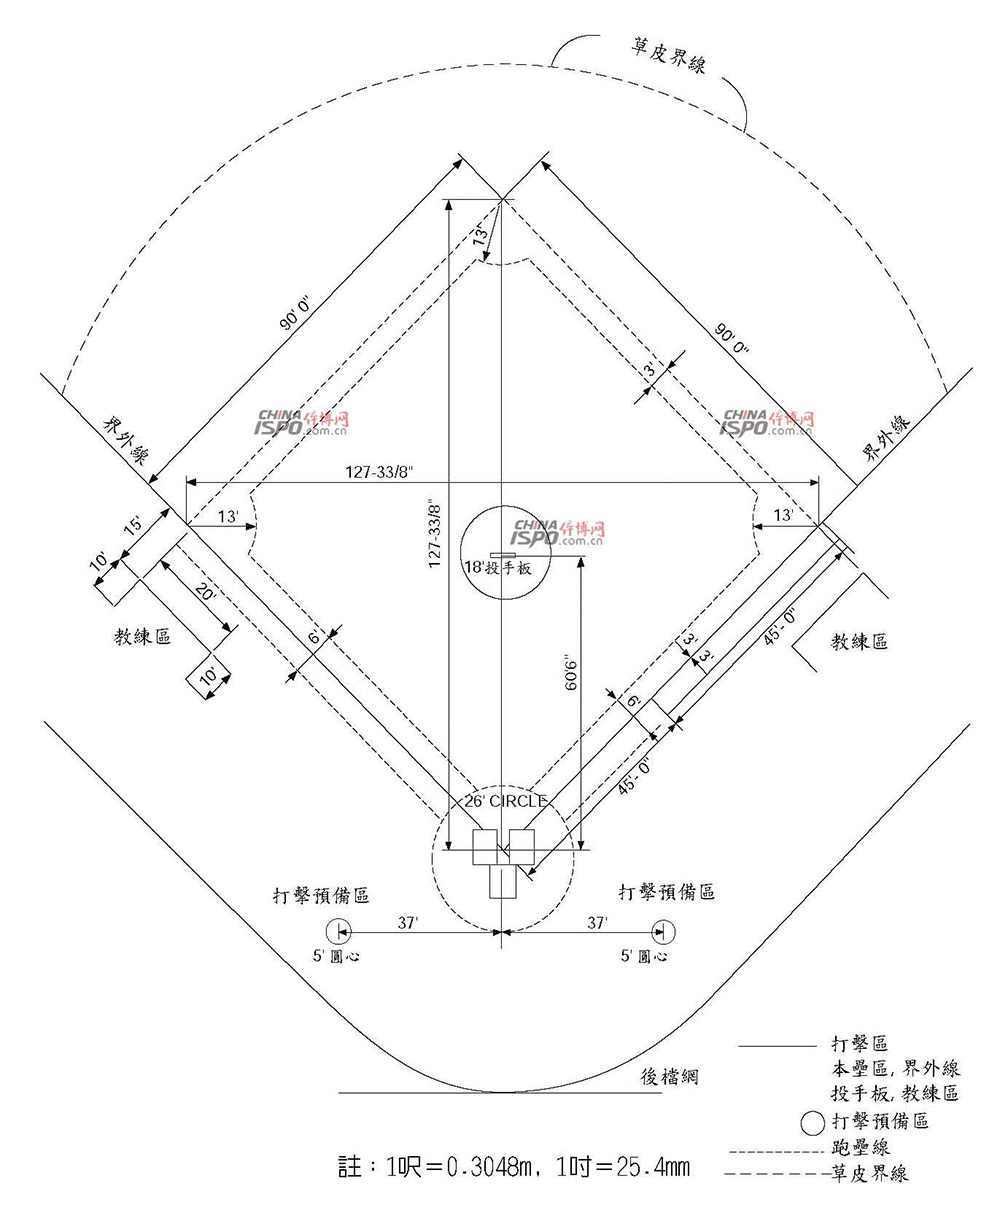 棒球场地标准尺寸示意图